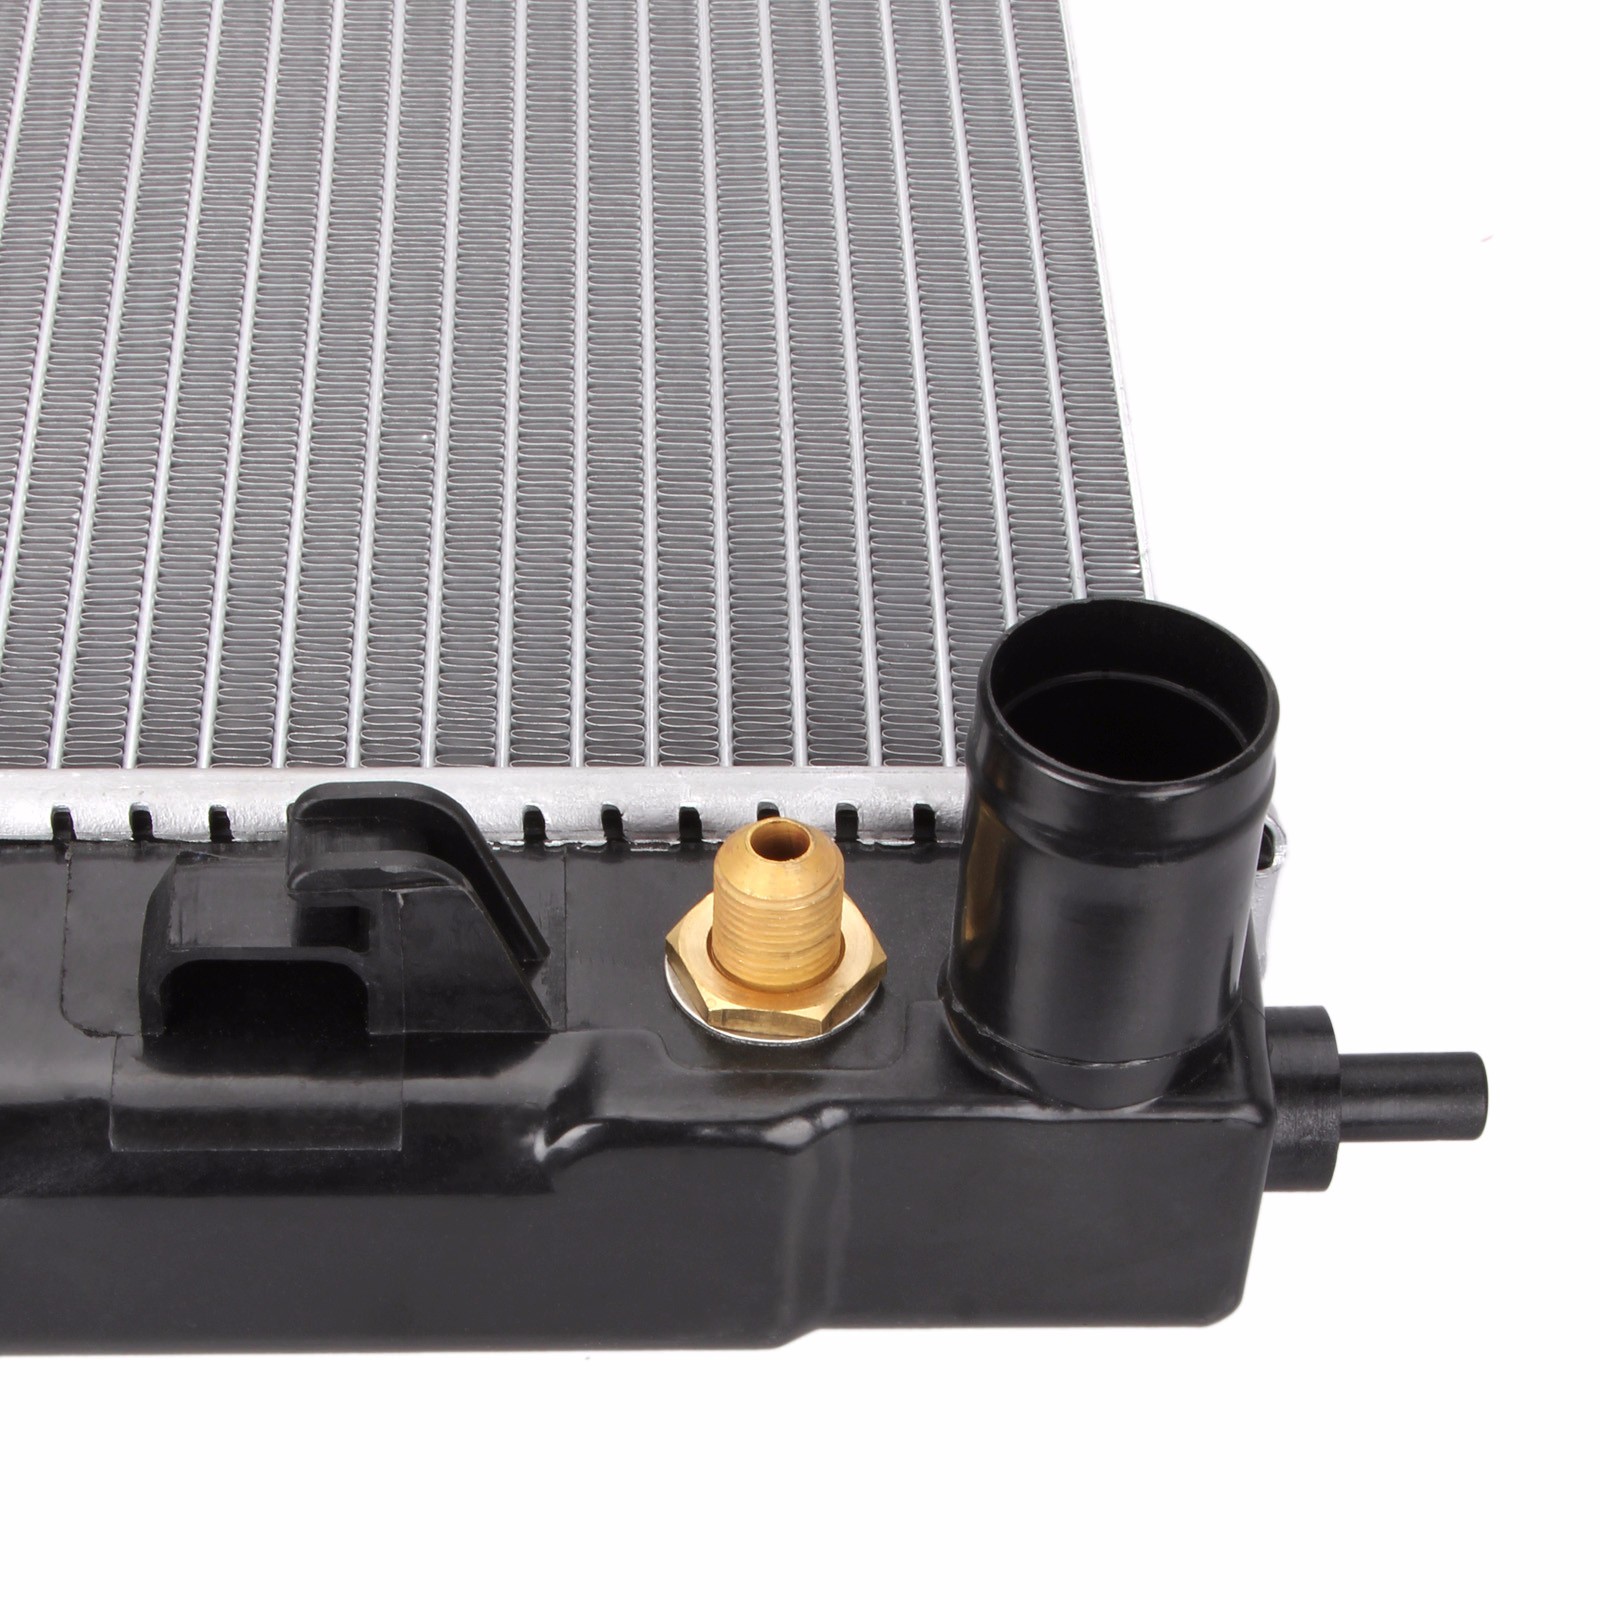 Dromedary-High Quality New 2688 Full Aluminum Radiator For Lexus Rx 330 33-202-v6-6